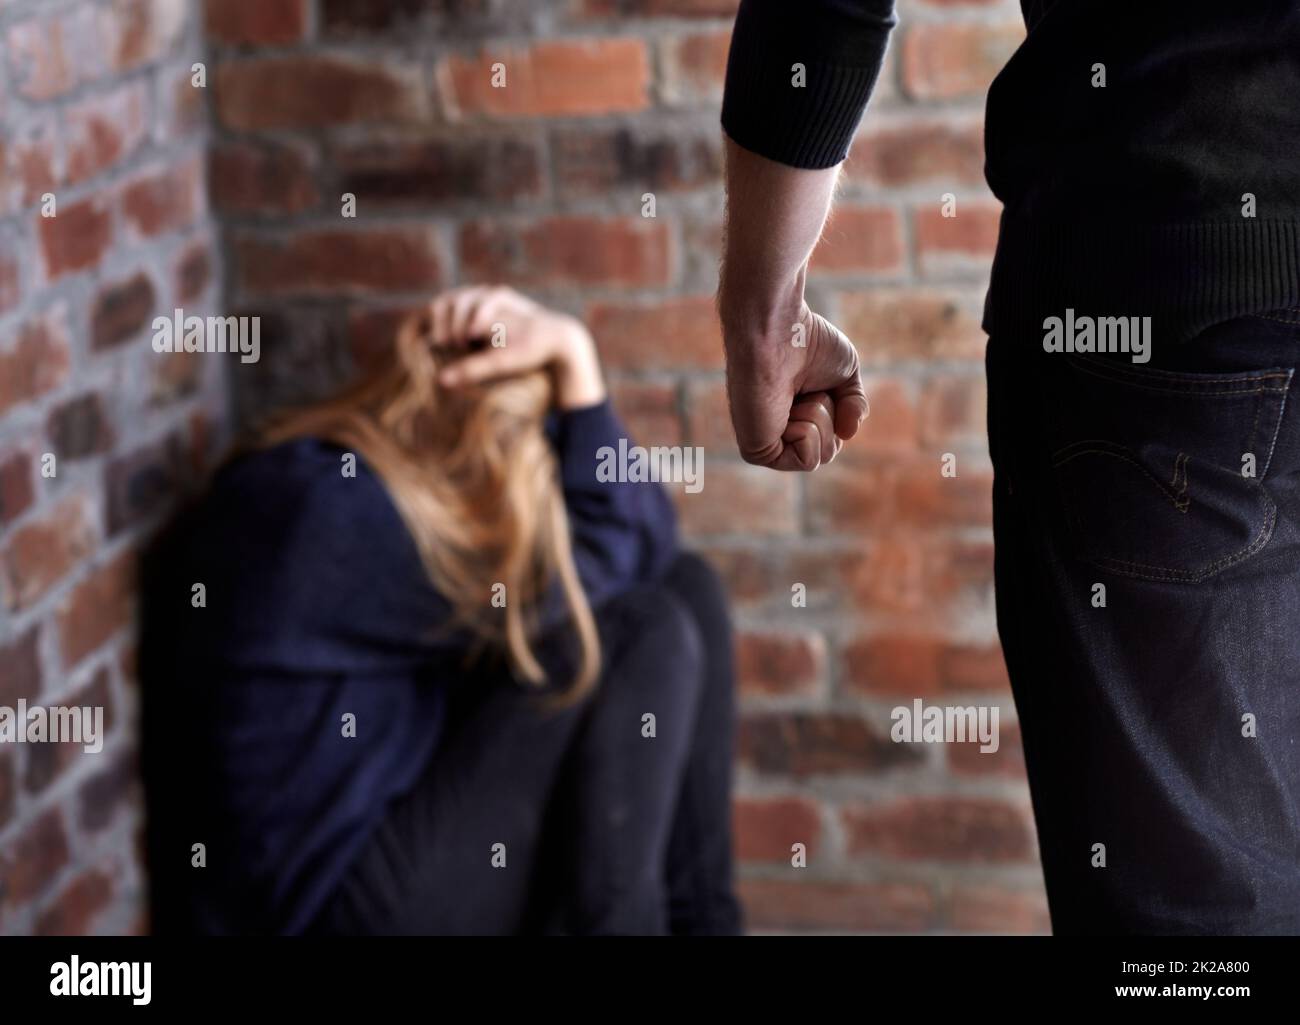 Es wird versucht, sich zu verstecken. Missbraucht eine junge Frau mit ihren Händen im Haar, während ihr Abnutzer vor ihr steht. Stockfoto